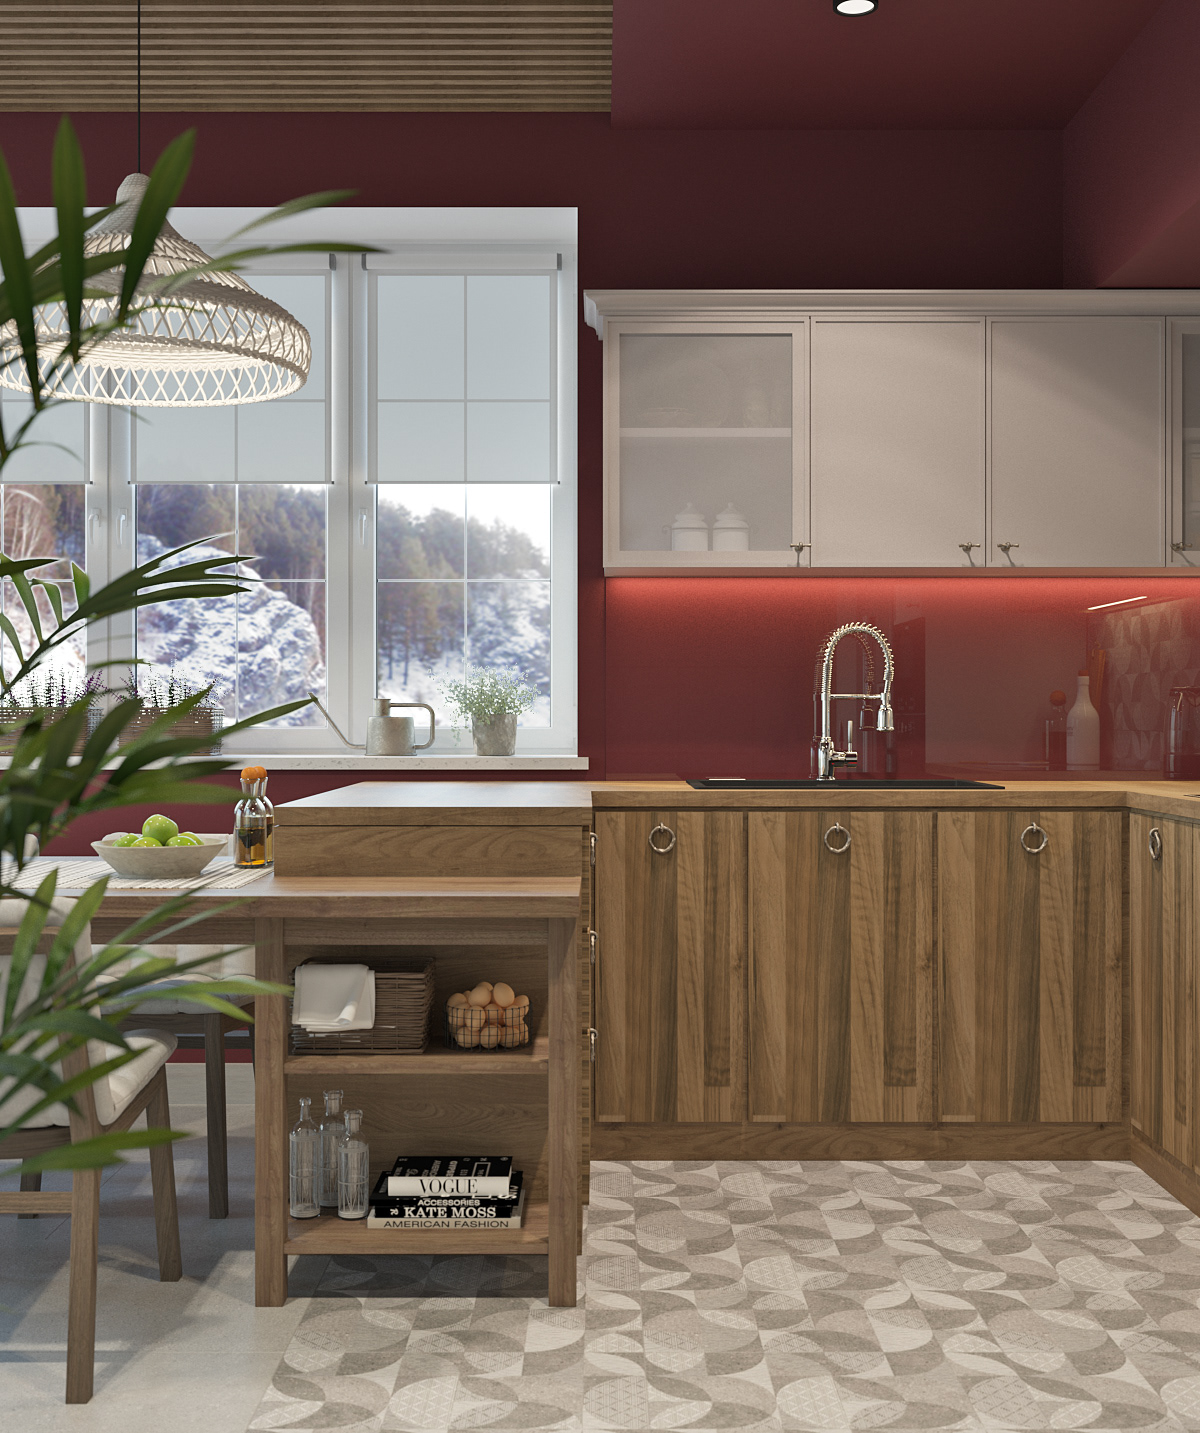 chalet kitchen kitchen design house in The Mountains visualization 3D kitchen marsala interior design  vintage